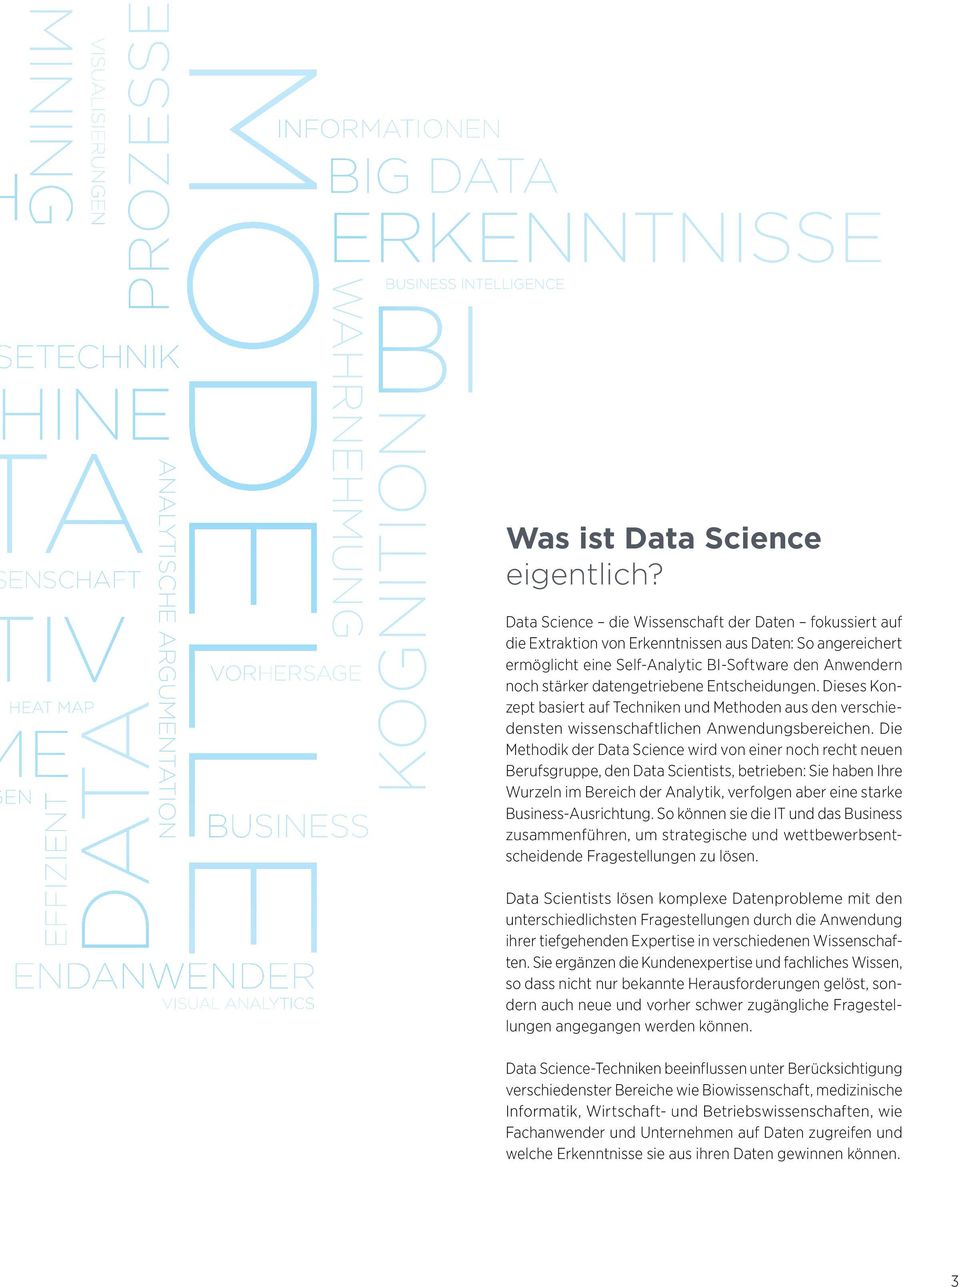 Data Science die Wissenschaft der Daten fokussiert auf die Extraktion von Erkenntnissen aus Daten: So angereichert ermöglicht eine Self-Analytic BI-Software den Anwendern noch stärker datengetriebene